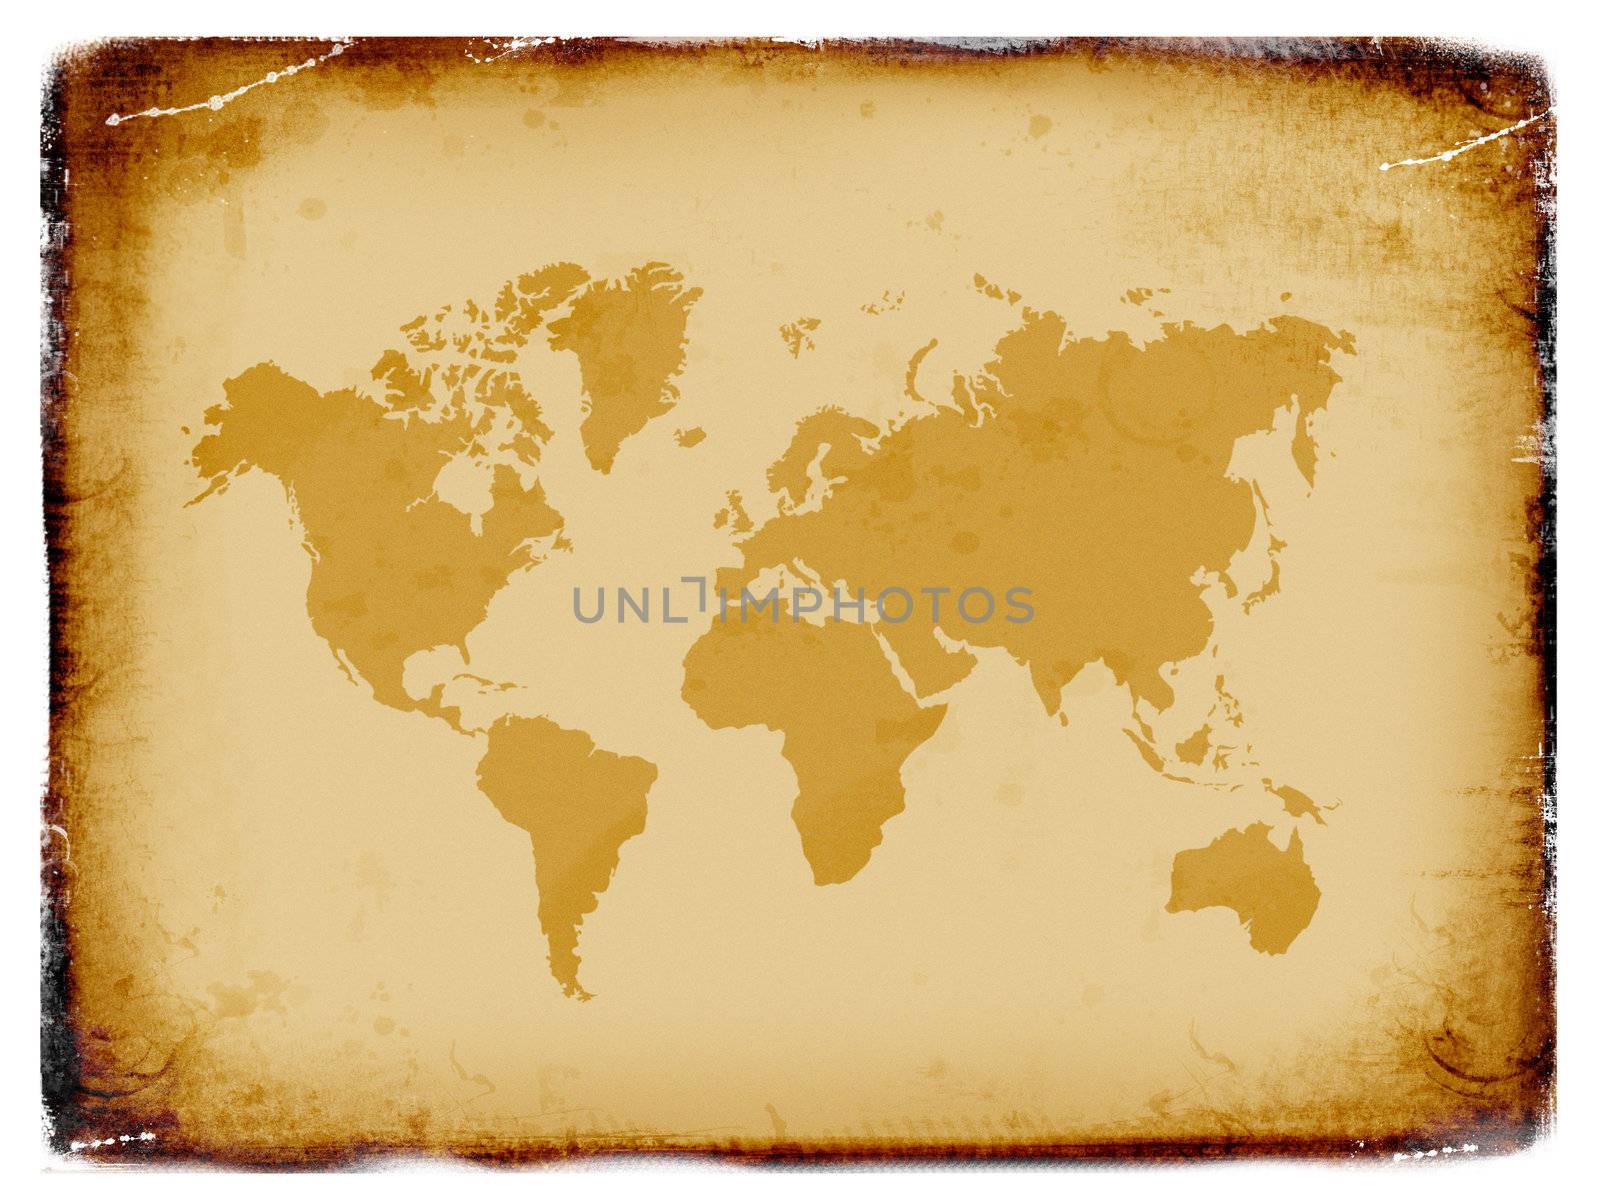 Ancient world map, grunge background by Kudryashka